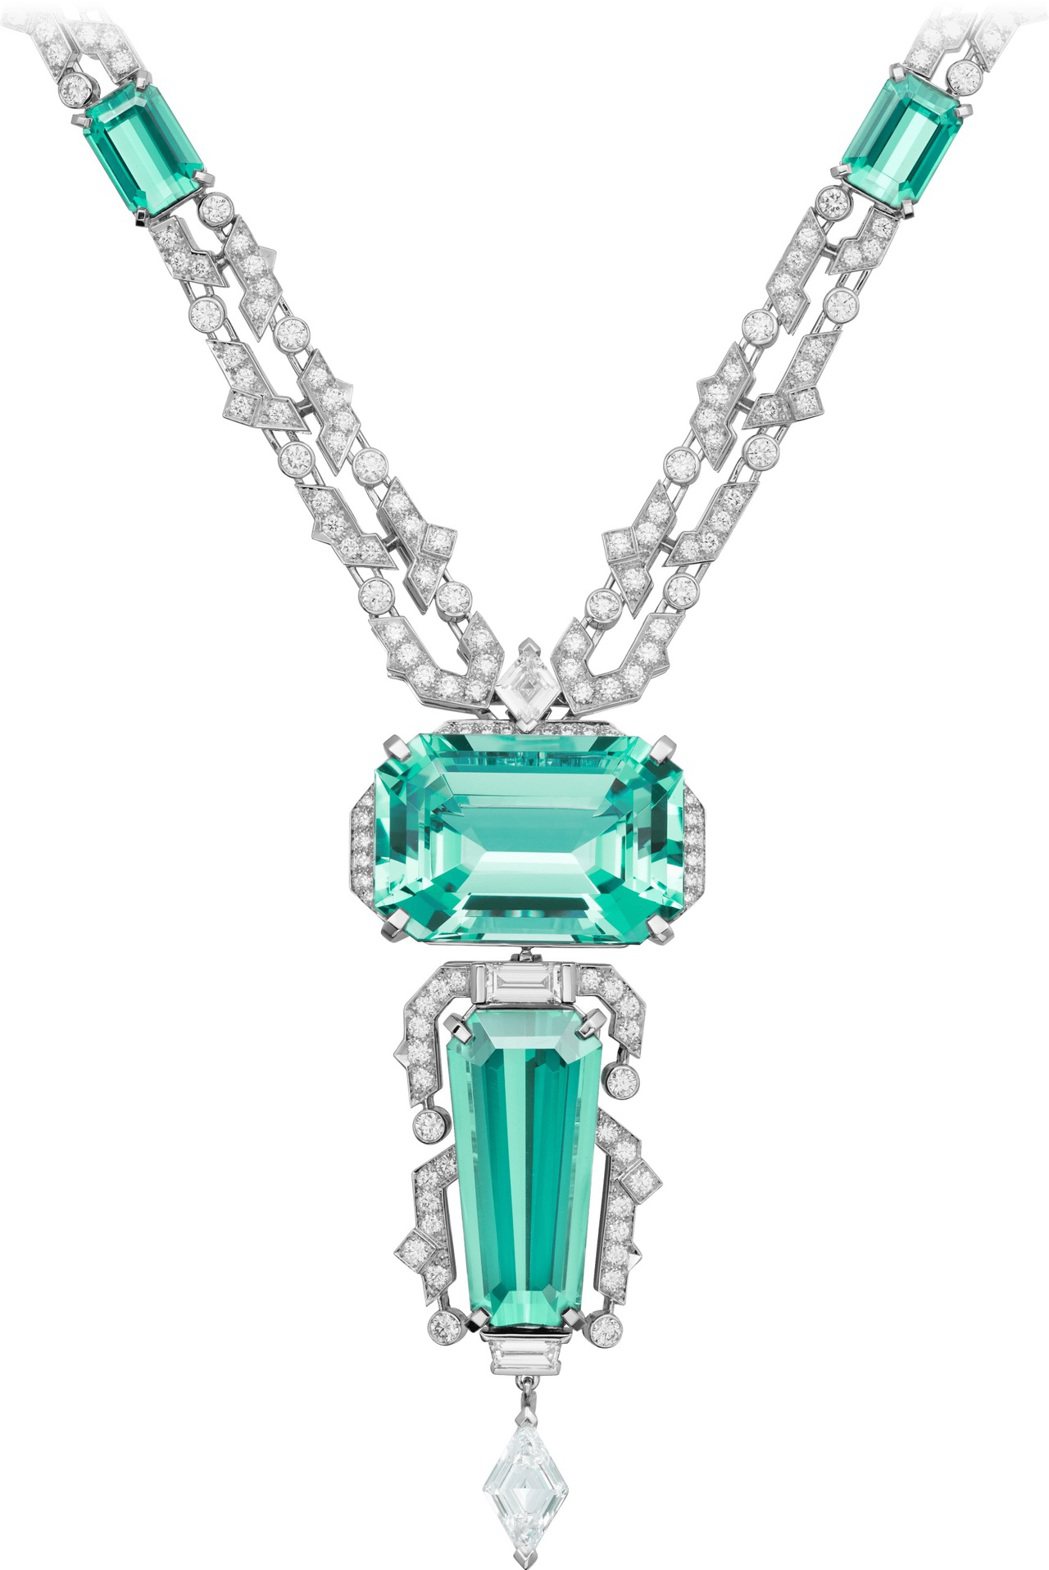 頂級珠寶項鍊鑲嵌一顆重25.28克拉的八角形綠色綠柱石，與梯形和八角形的藍綠色碧...